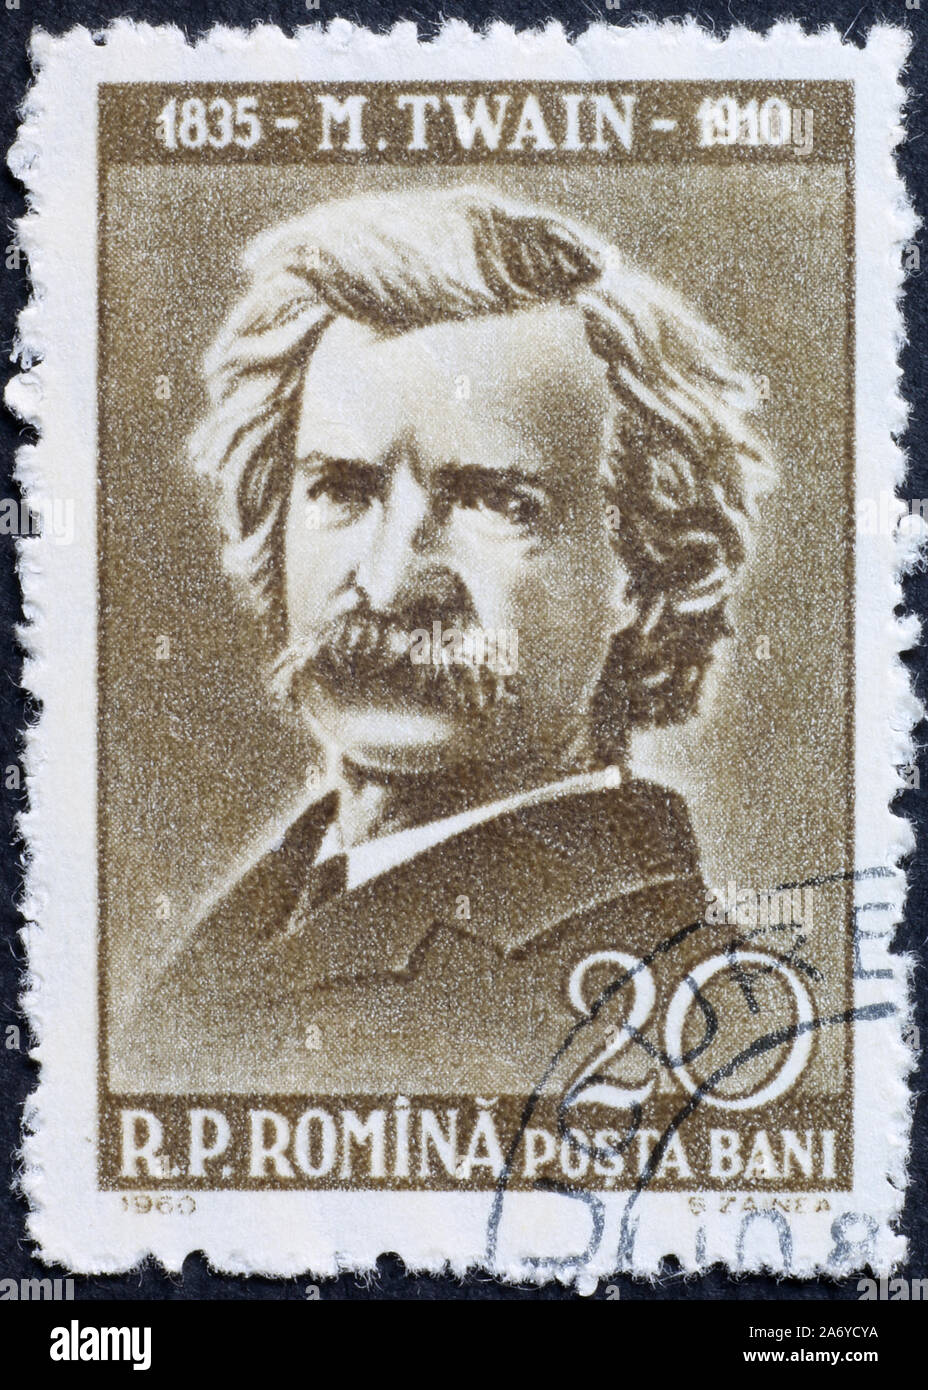 Portrait de Mark Twain sur timbre russe ancien Banque D'Images